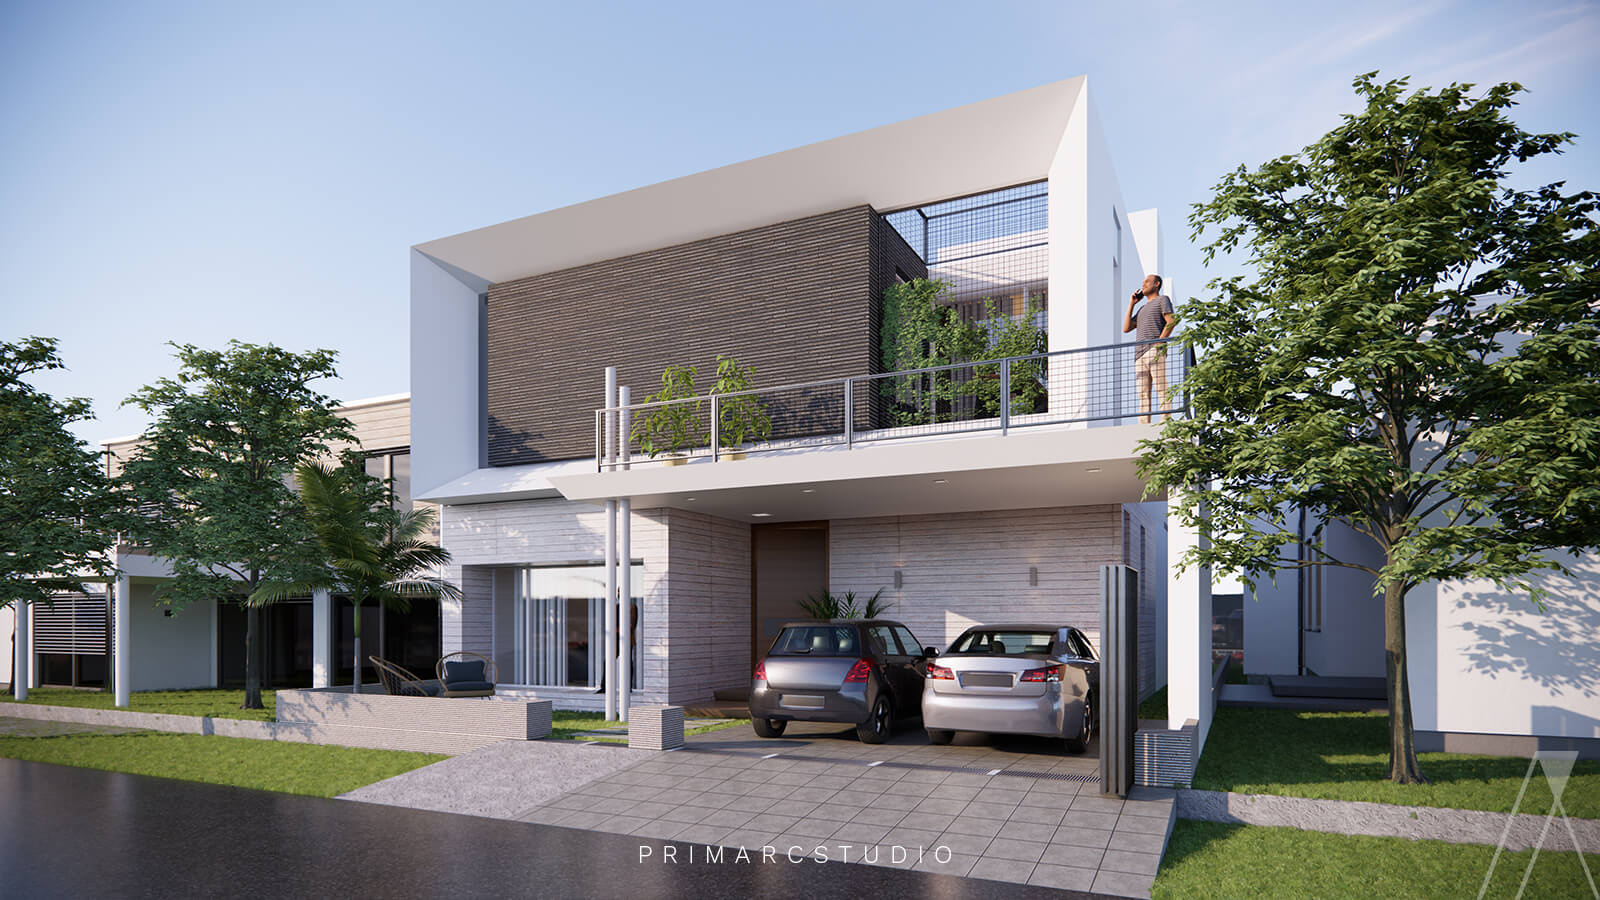 Exterior house design with simple modern facade